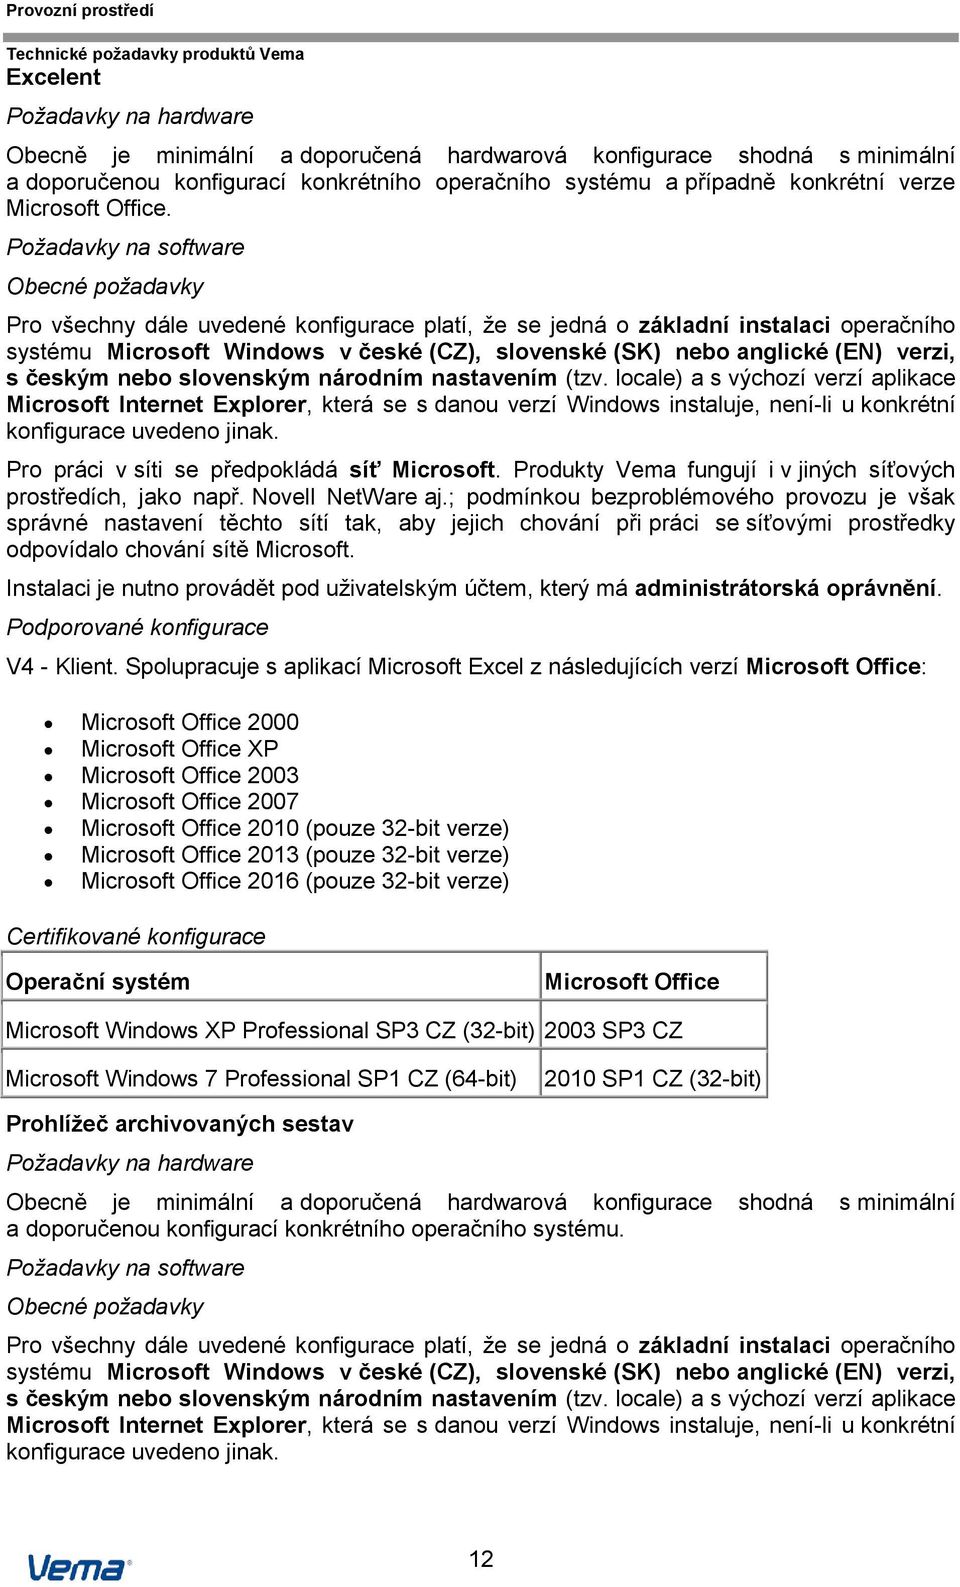 Požadavky na software Obecné požadavky Pro všechny dále uvedené konfigurace platí, že se jedná o základní instalaci operačního systému Microsoft Windows v české (CZ), slovenské (SK) nebo anglické